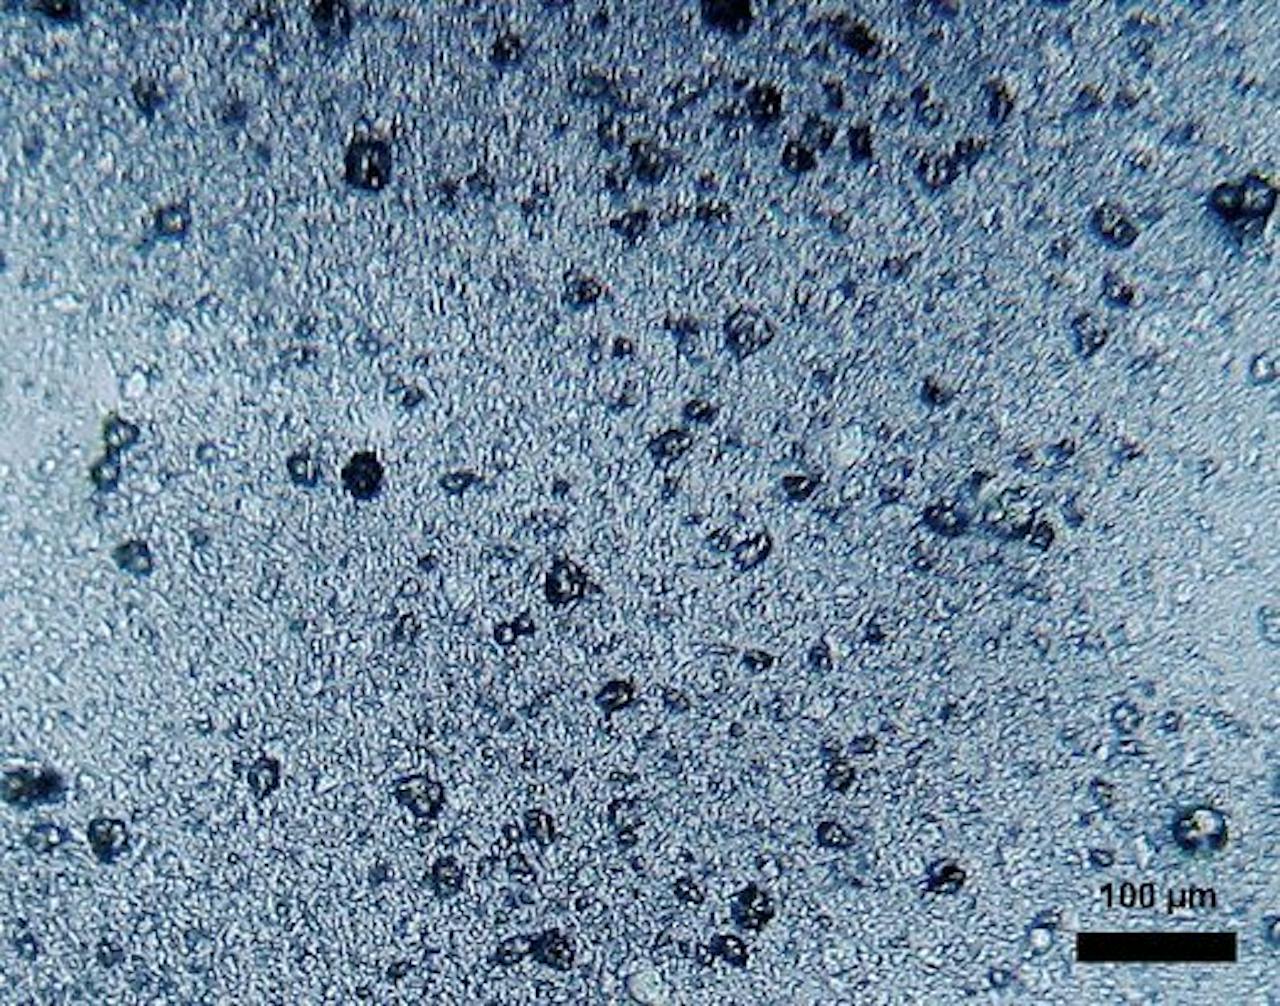 Een close-up beeld van microscopisch kleine bolletjes van poly-ethyleen in tandpasta.